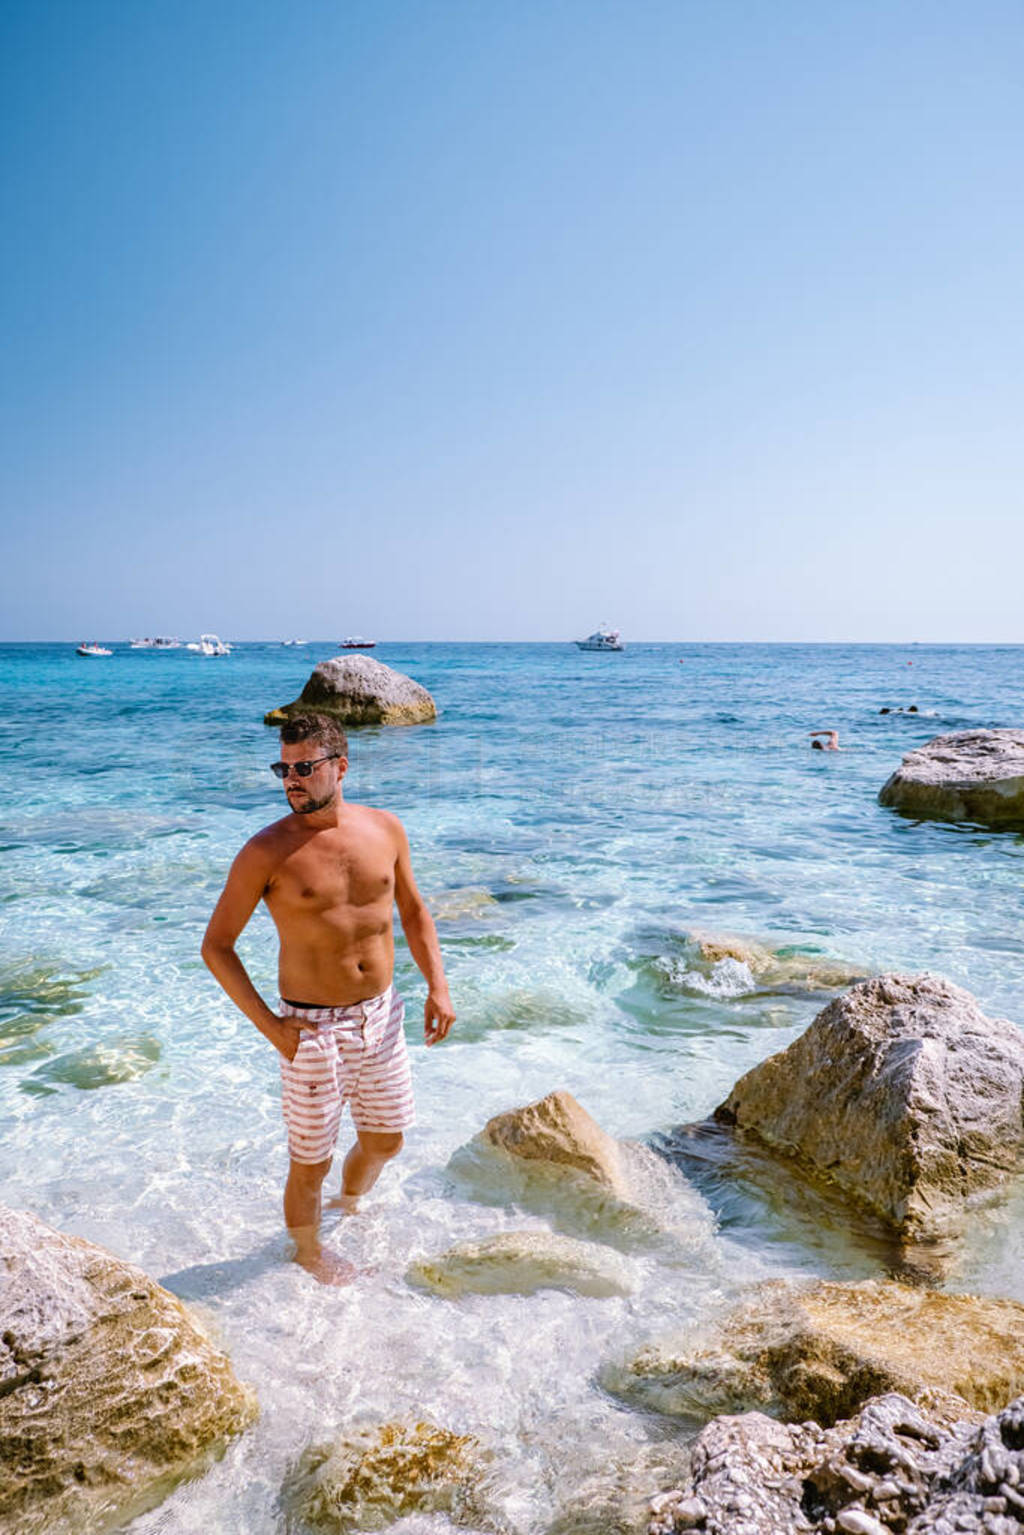 Sardinia Orosei coast Italy, guy on vacation at the Island of Sa